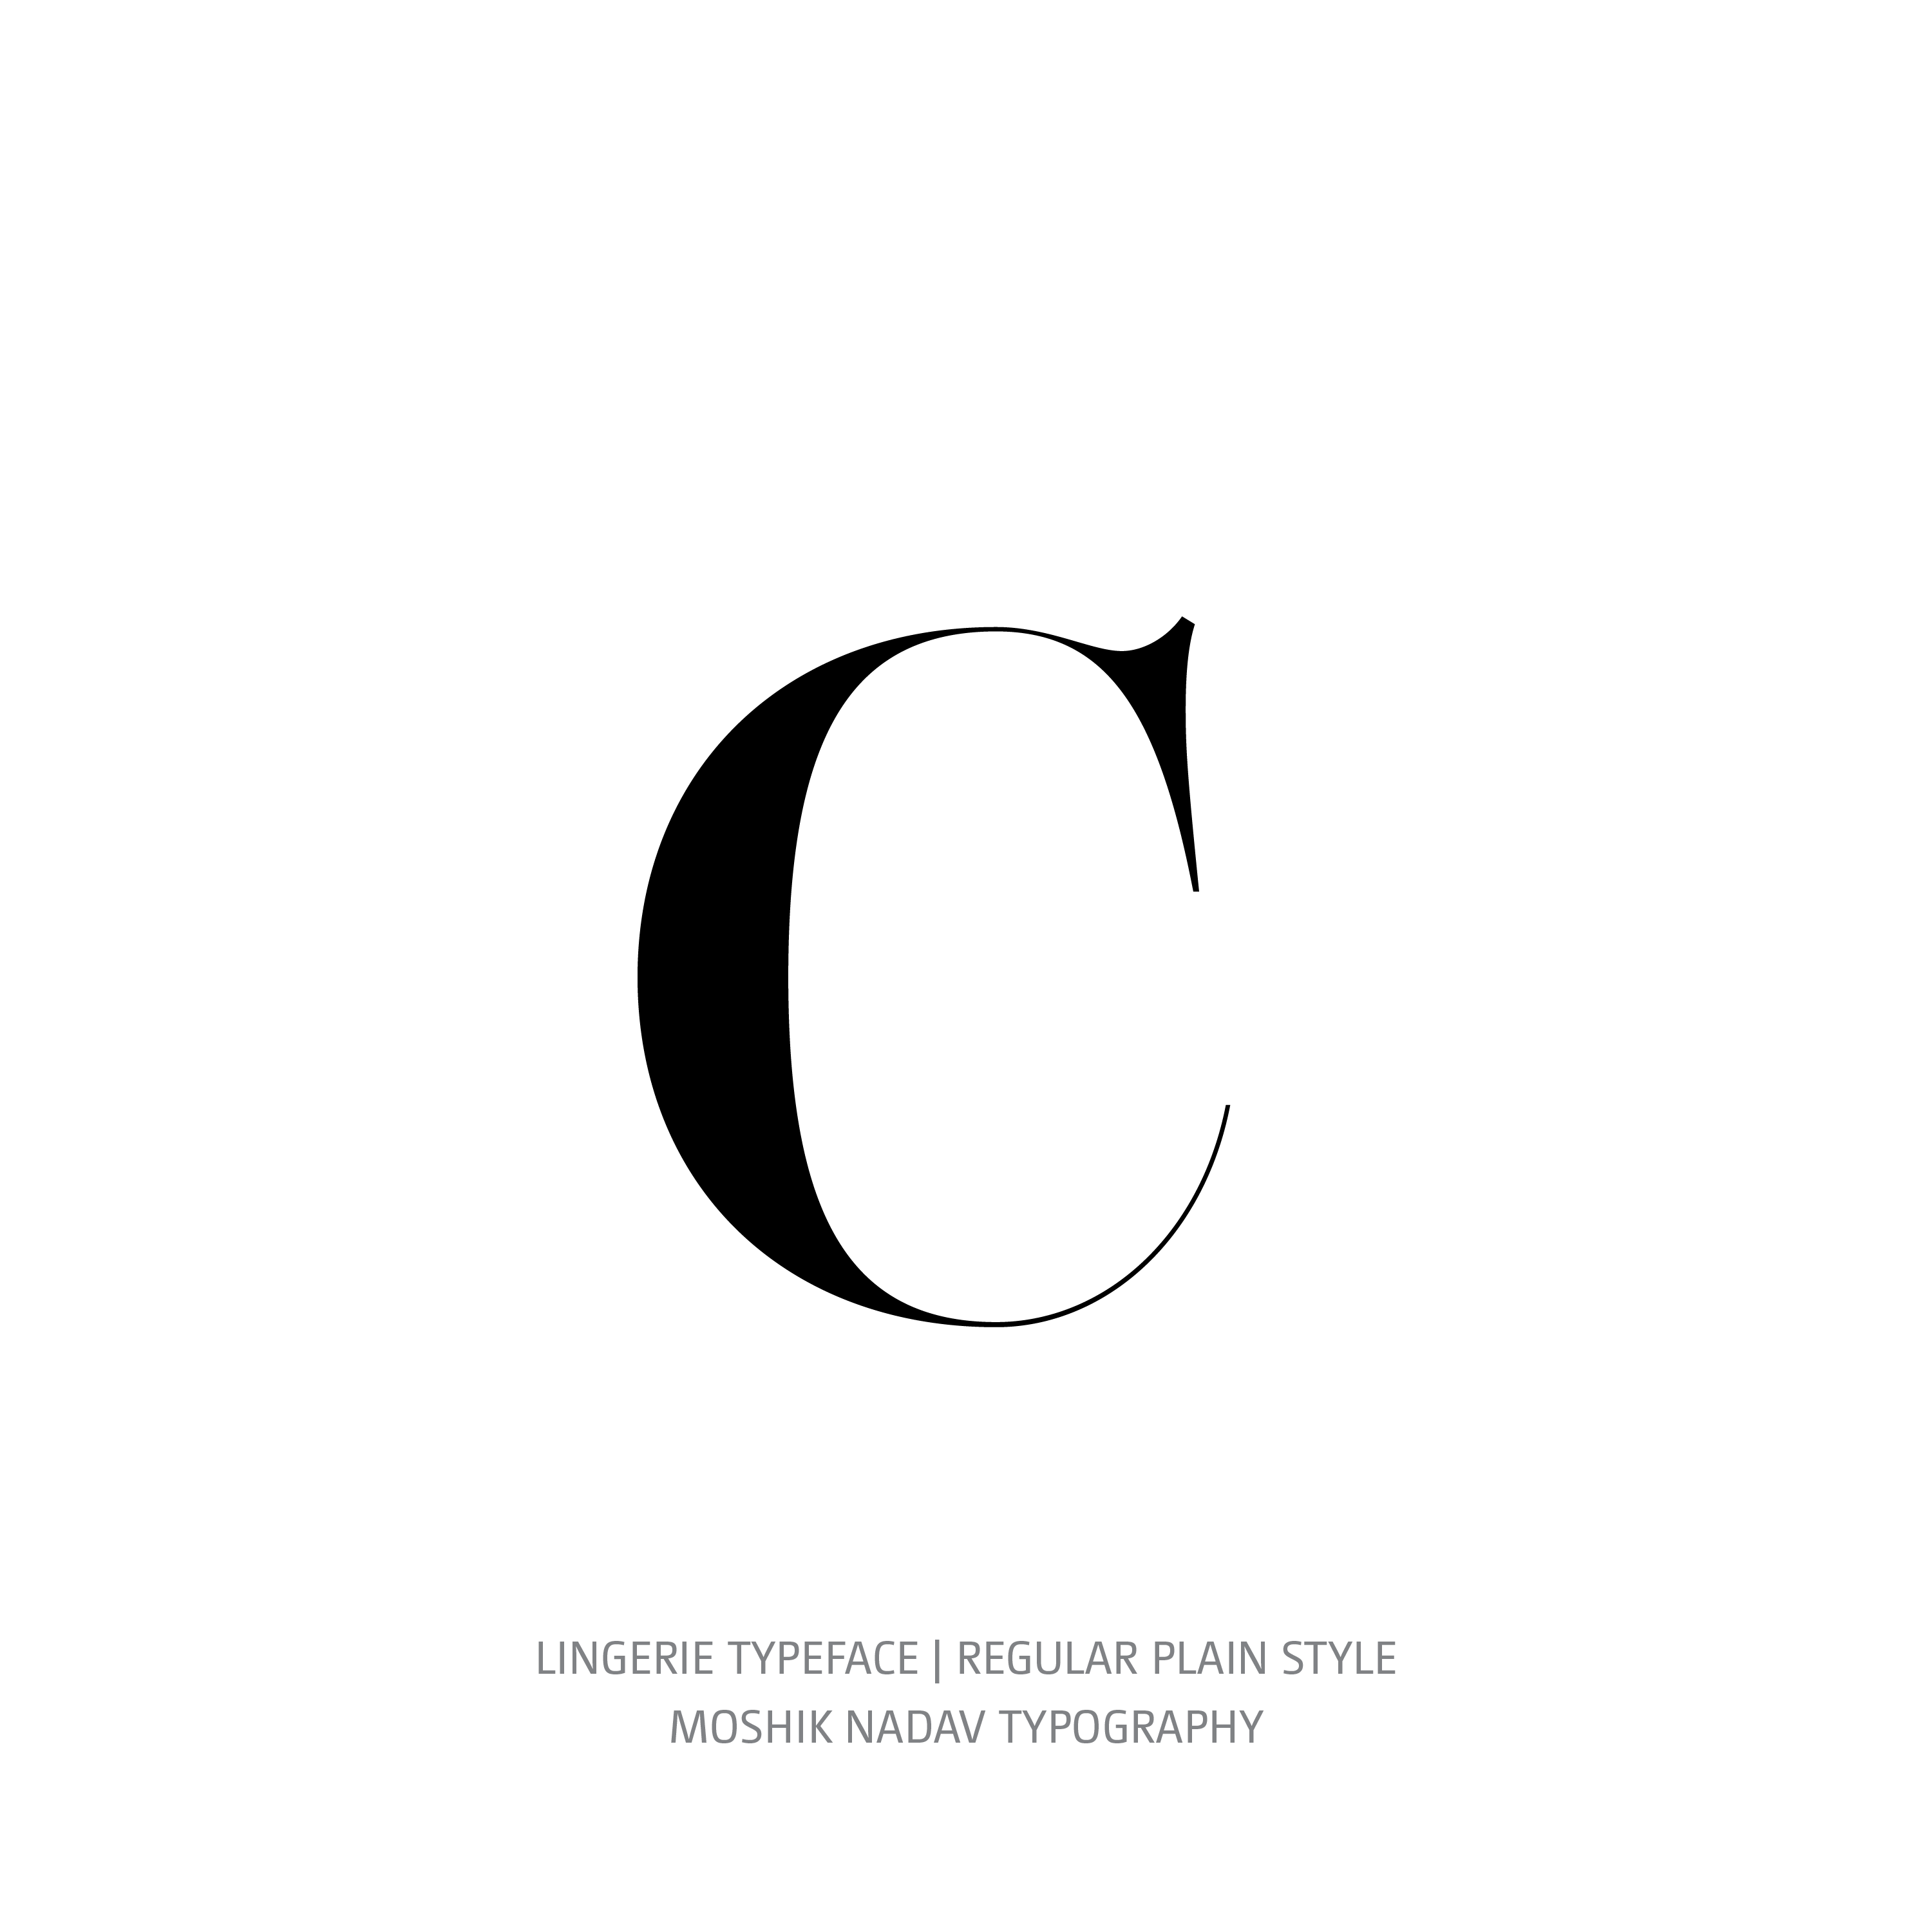 Lingerie Typeface Regular Plain c